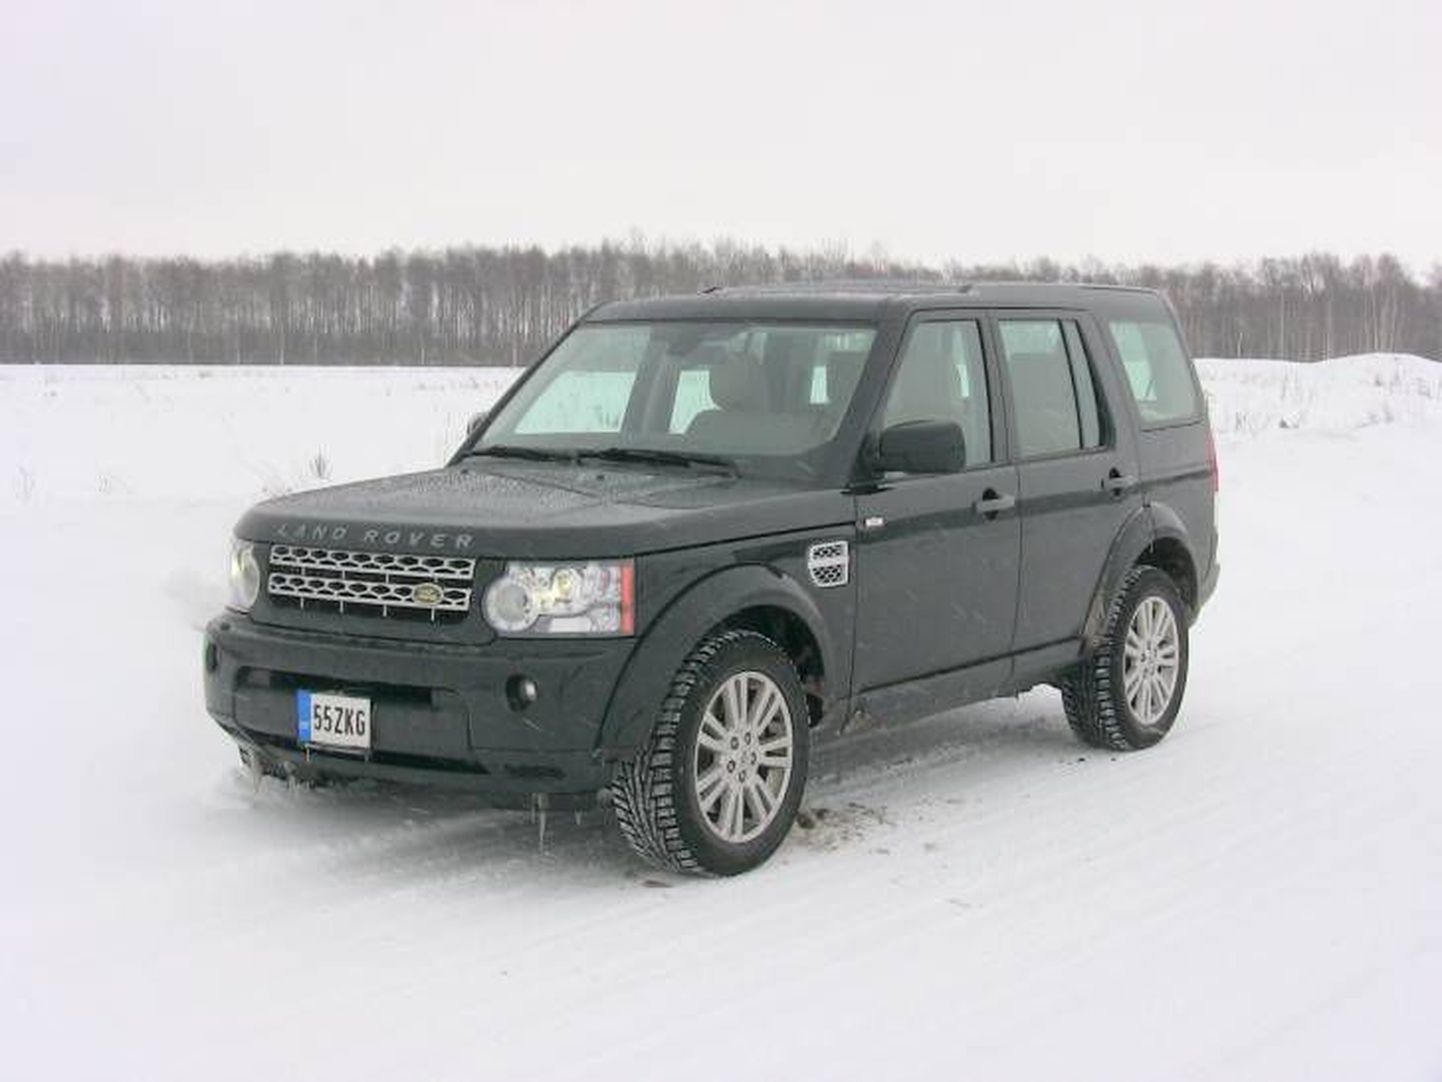 Автомобиль Land Rover. Иллюстративное фото.